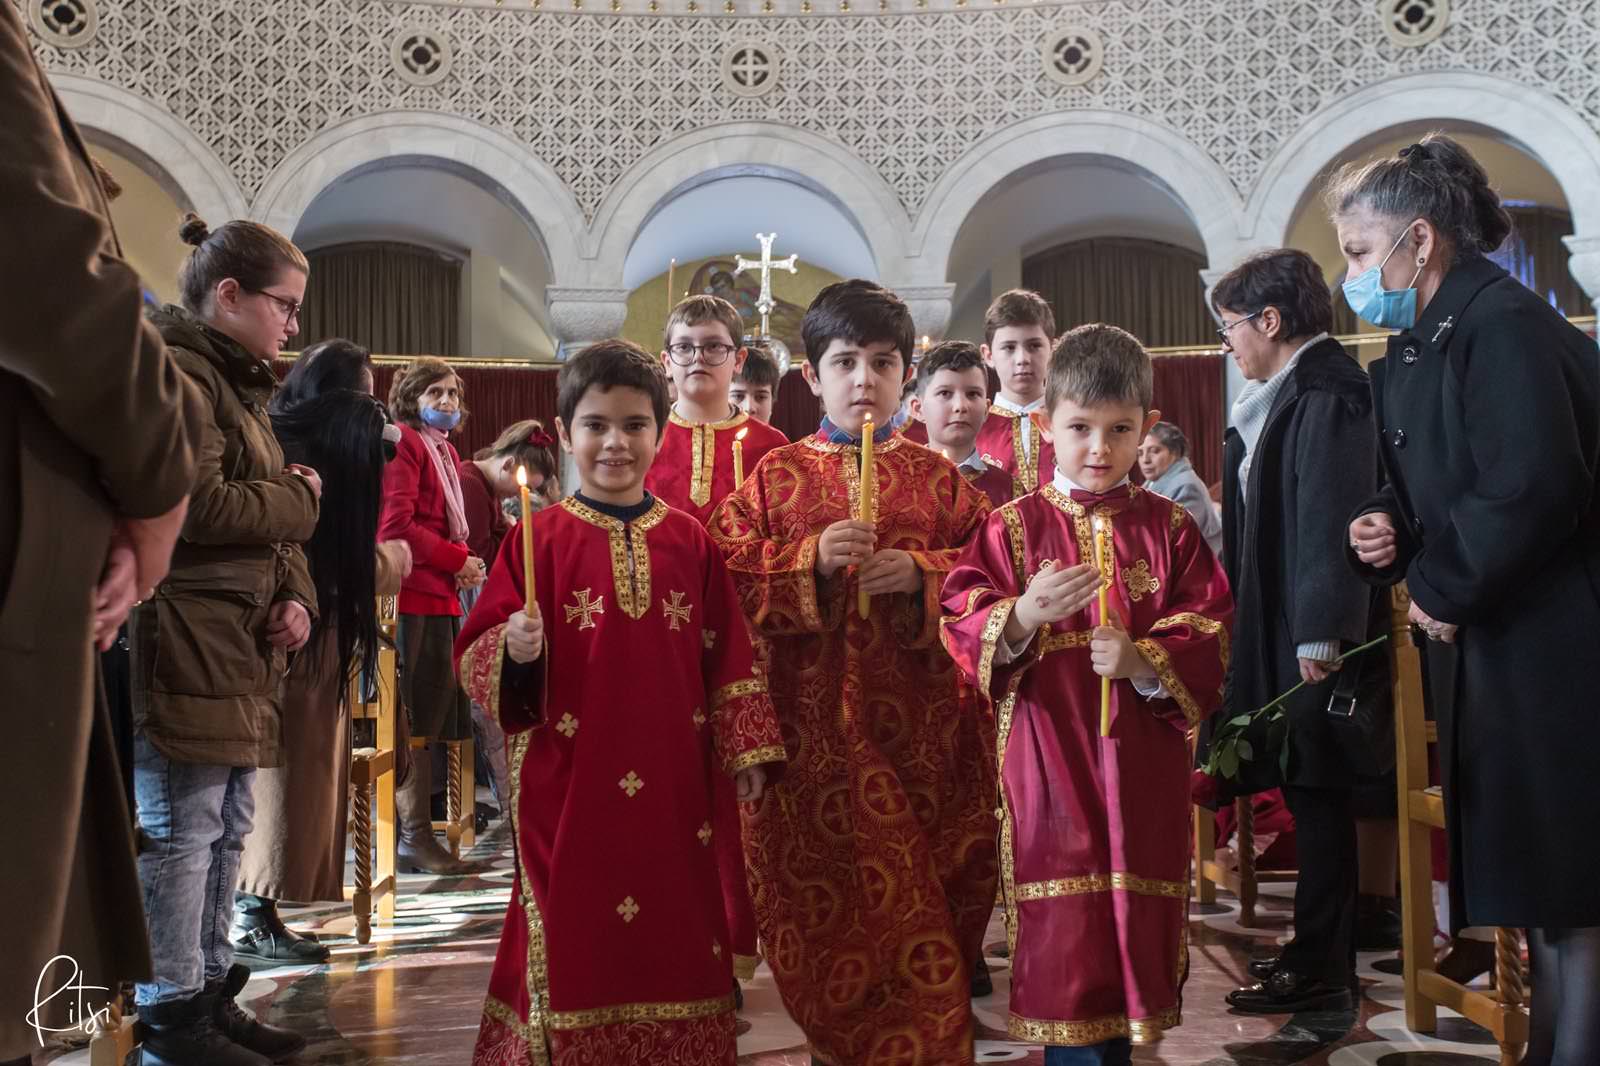 πιστοί στους Ορθόδοξους ναούς της Αλβανίας τα Χριστούγεννα